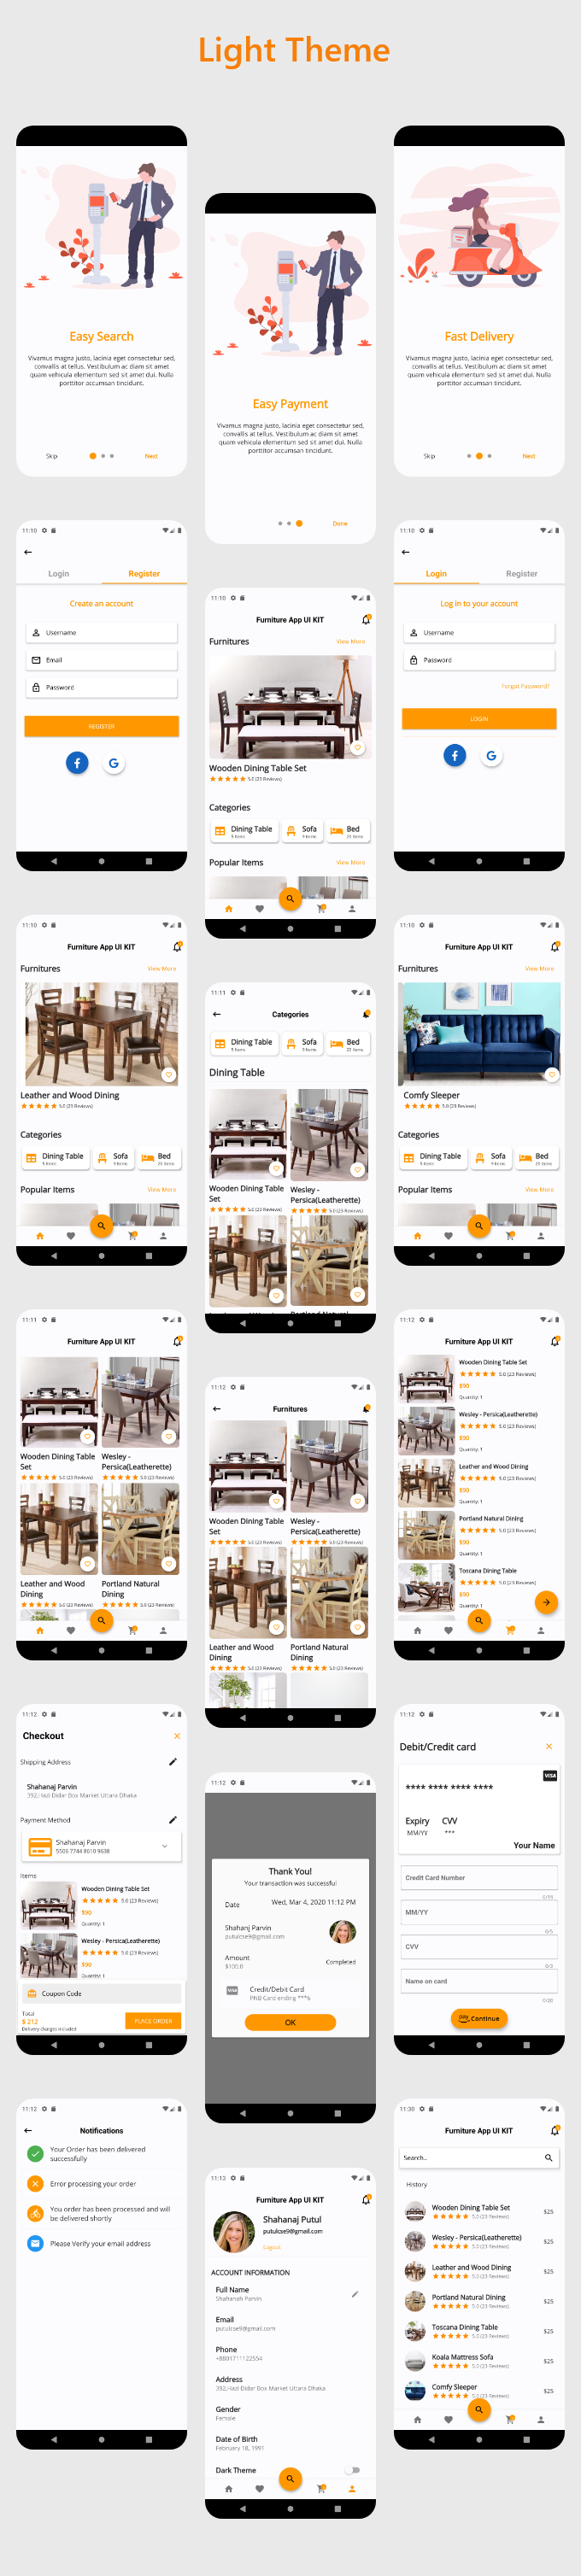 Furni - Furniture App UI Kit By Flutter - 2